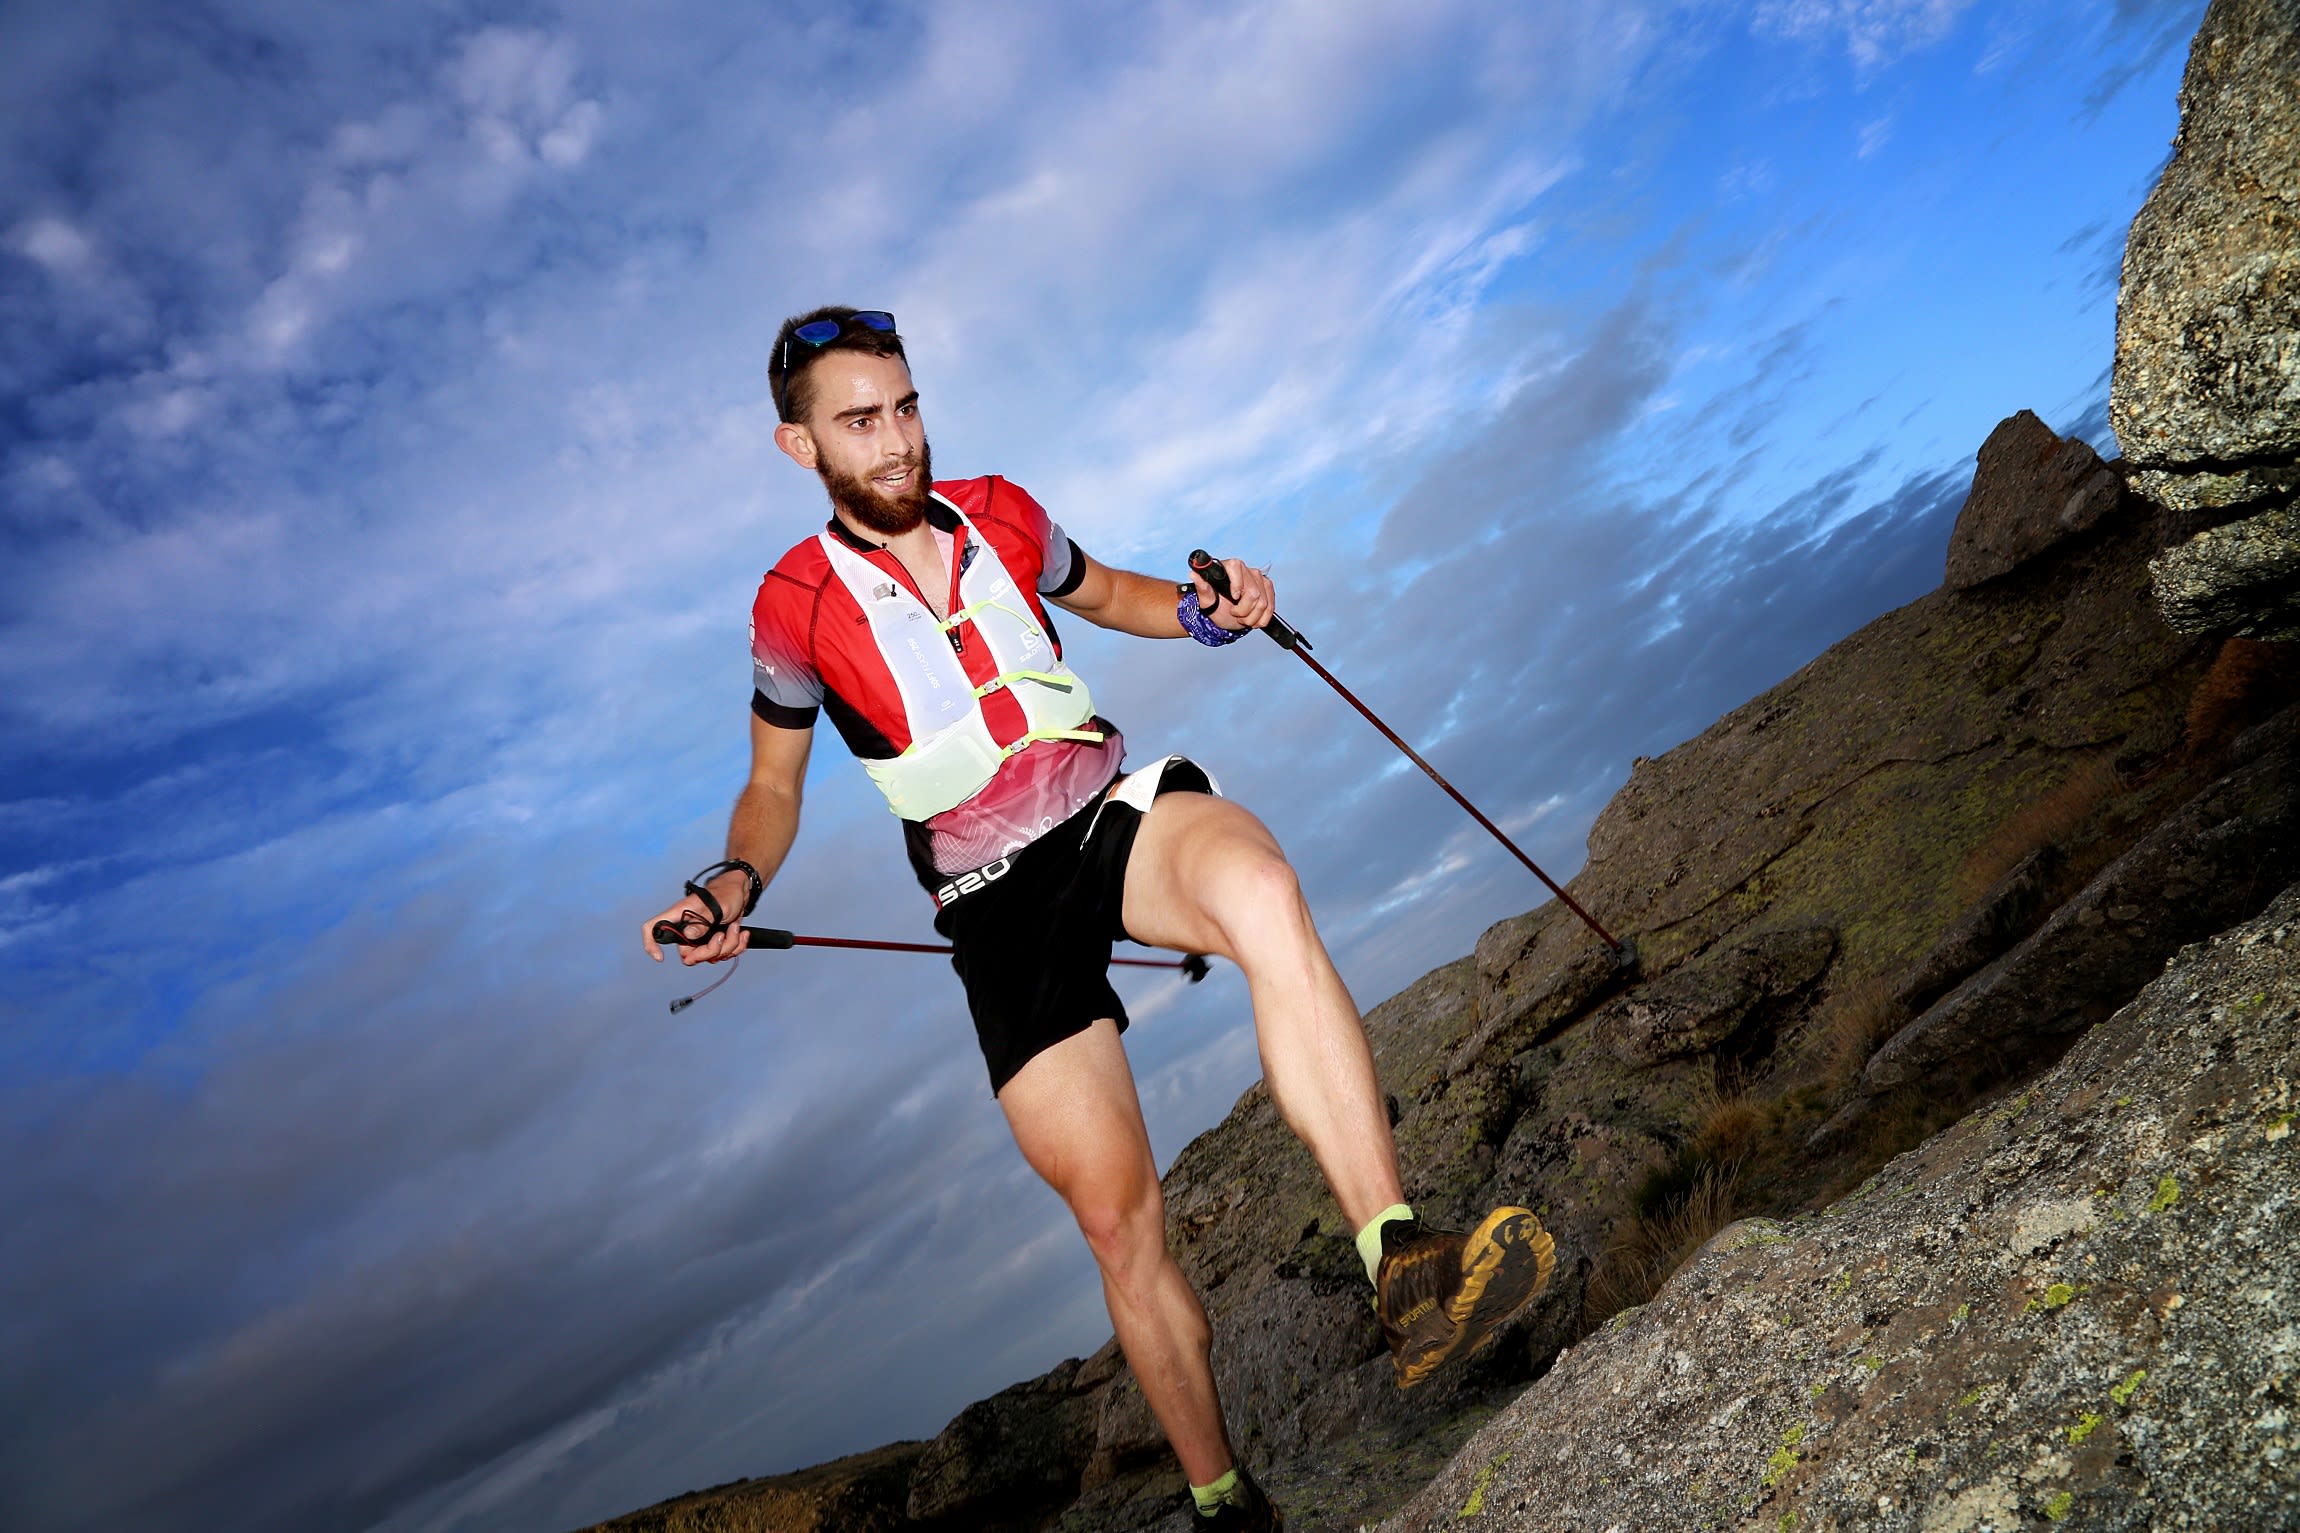 Ultra Running Hombre Atleta Corredor En Trail Run En Montañas De La  Naturaleza. Deportes De Resistencia Estilo De Vida Saludable Y Activo.  Motivación De La Aptitud. Fotos, retratos, imágenes y fotografía de